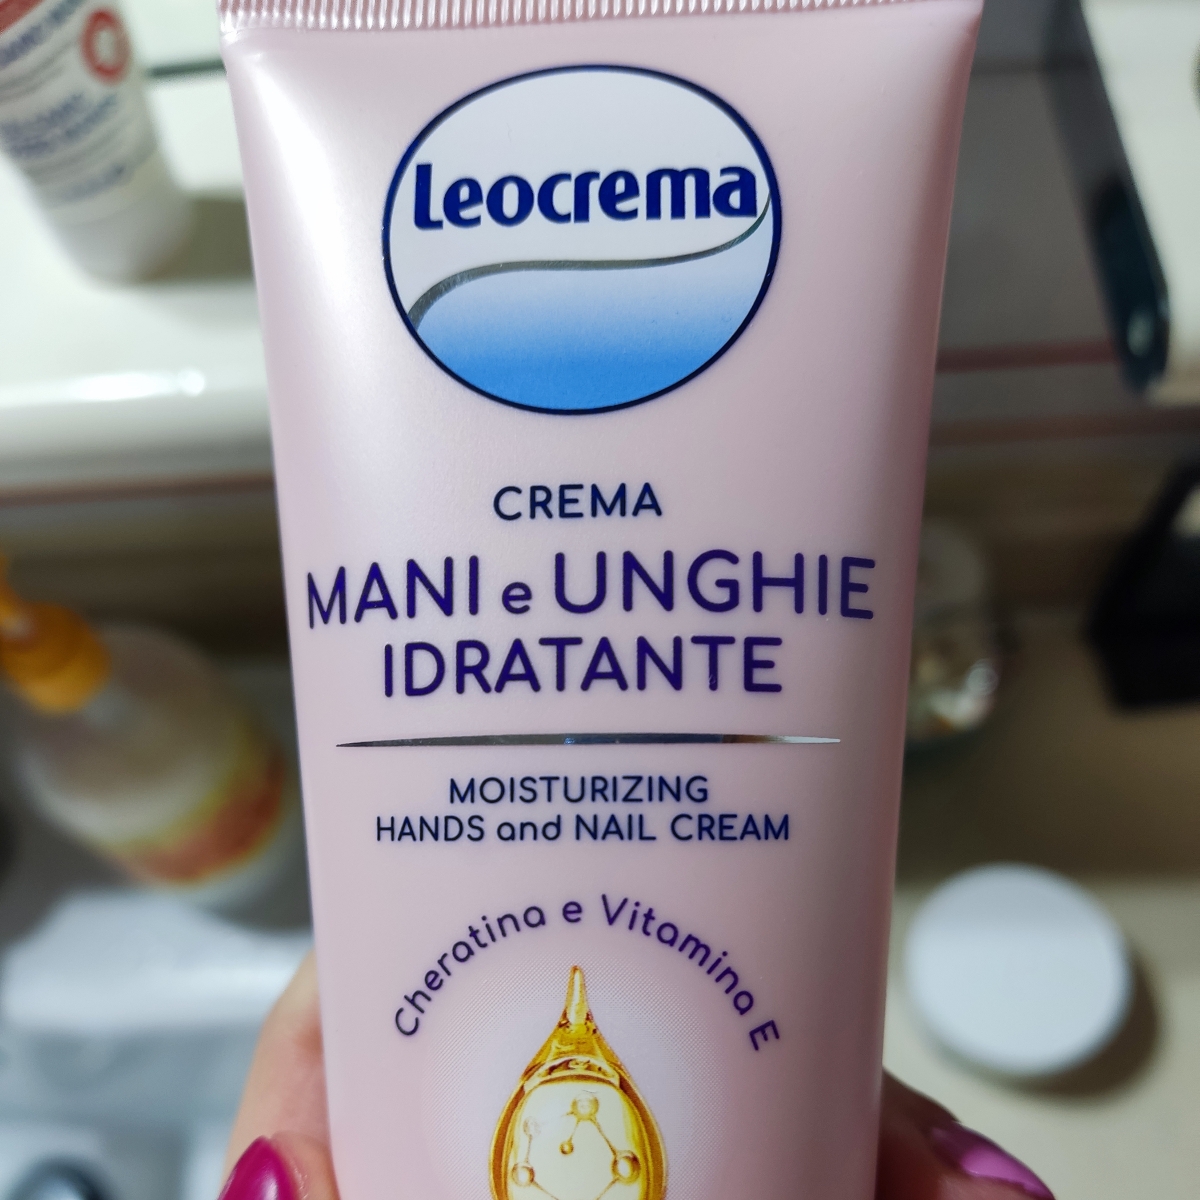 Leocrema Crema Mani E Unghie Idratante - Cheratina E Vitamina E Reviews |  abillion